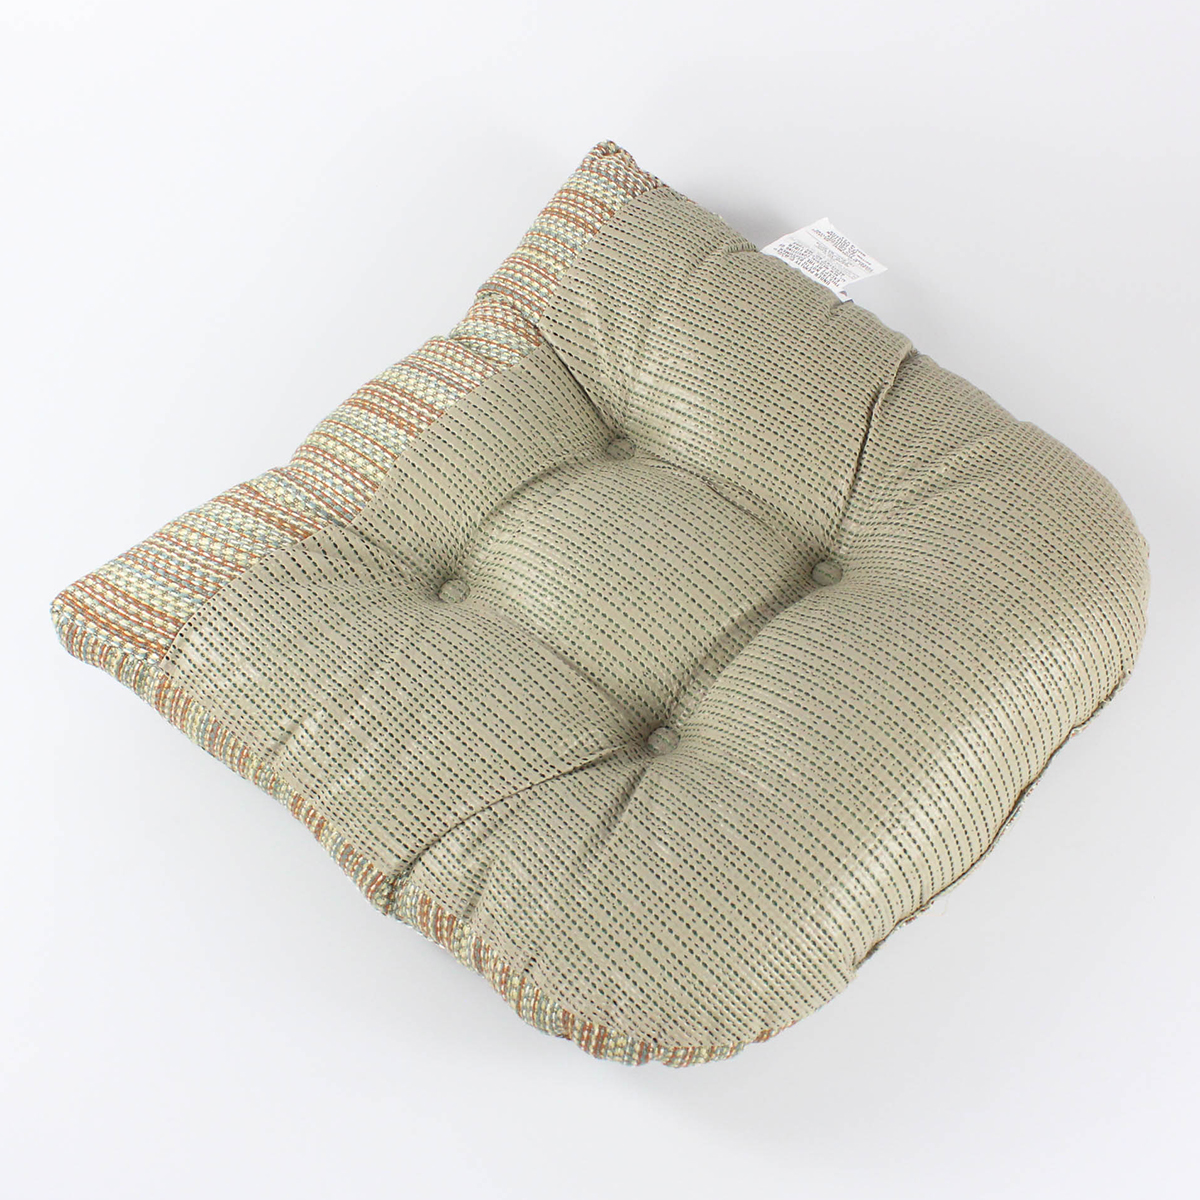 XL Chair Cushion - Cracker Barrel